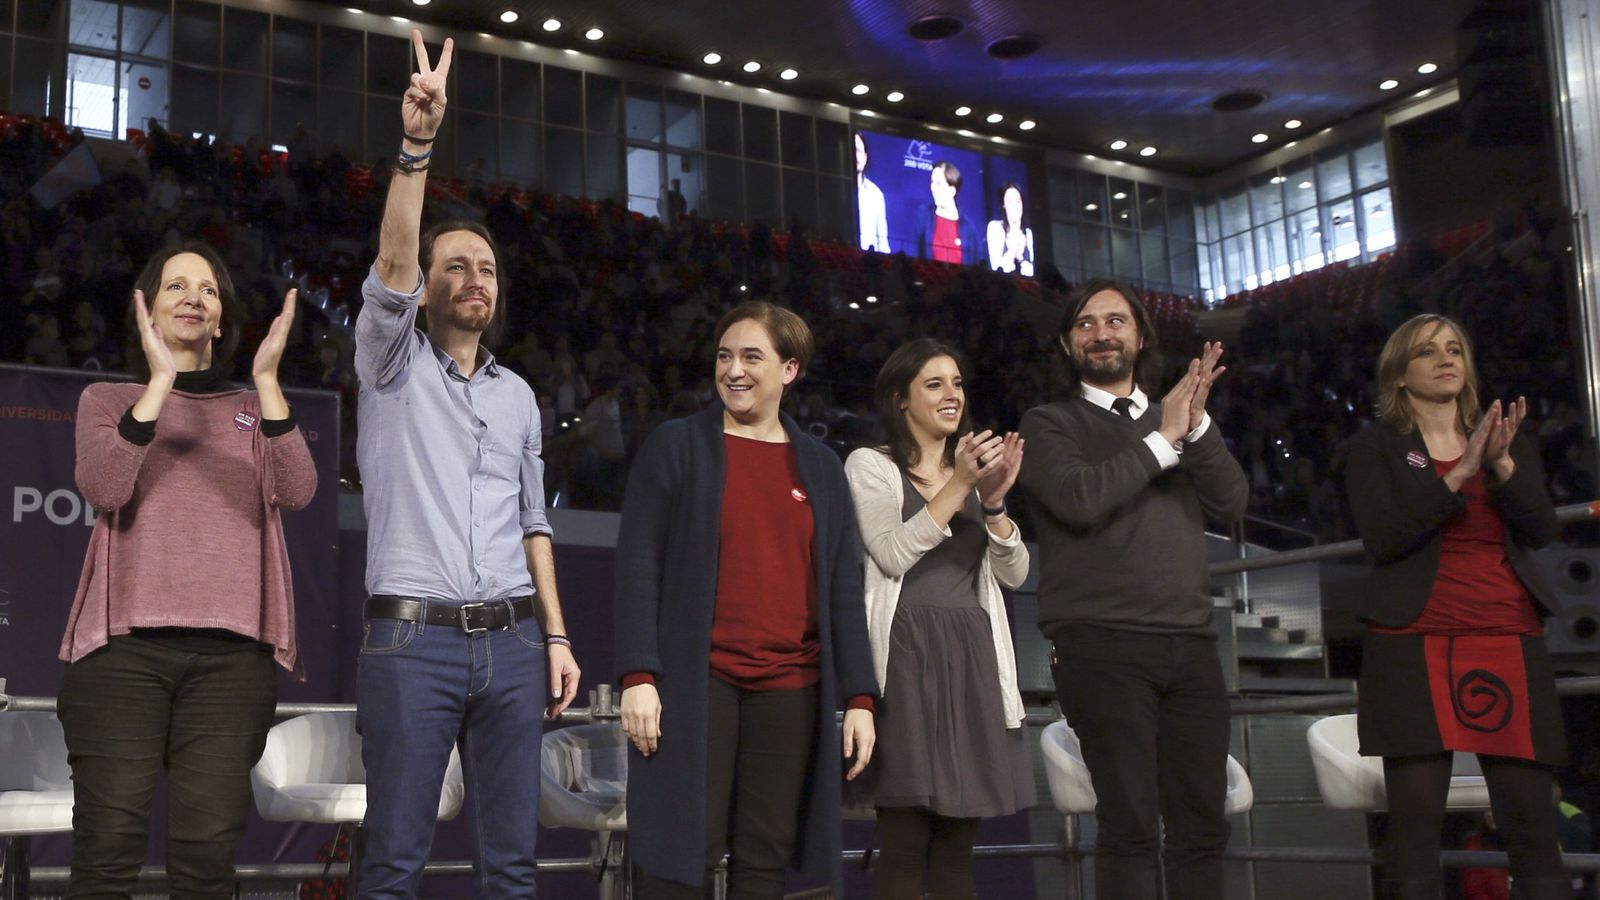 Foto: Mitin del 13 de diciembre de Podemos en la Caja Mágica de Madrid. (Efe)